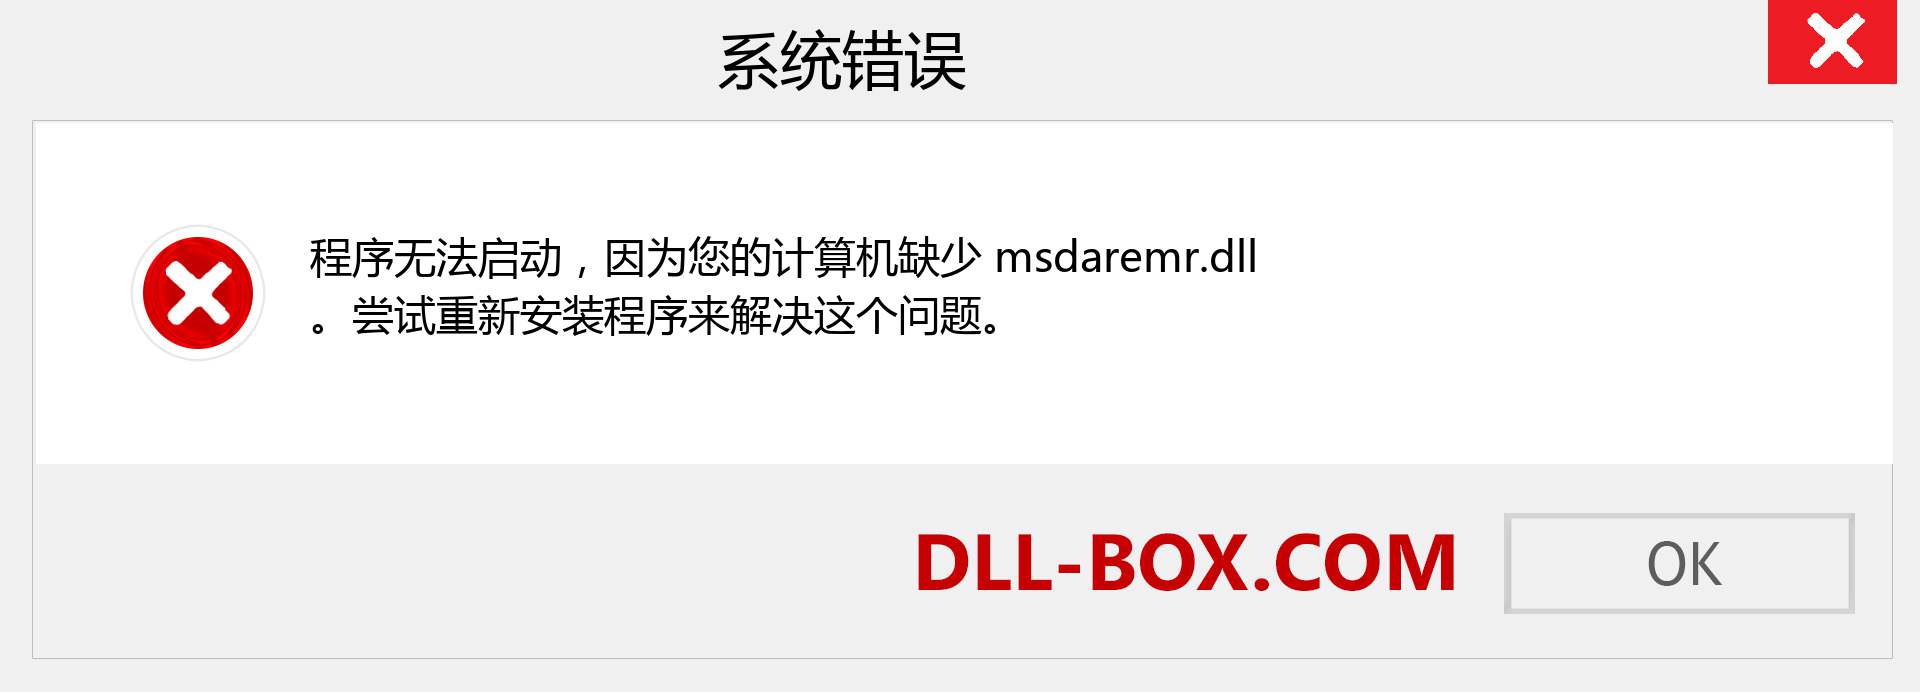 msdaremr.dll 文件丢失？。 适用于 Windows 7、8、10 的下载 - 修复 Windows、照片、图像上的 msdaremr dll 丢失错误